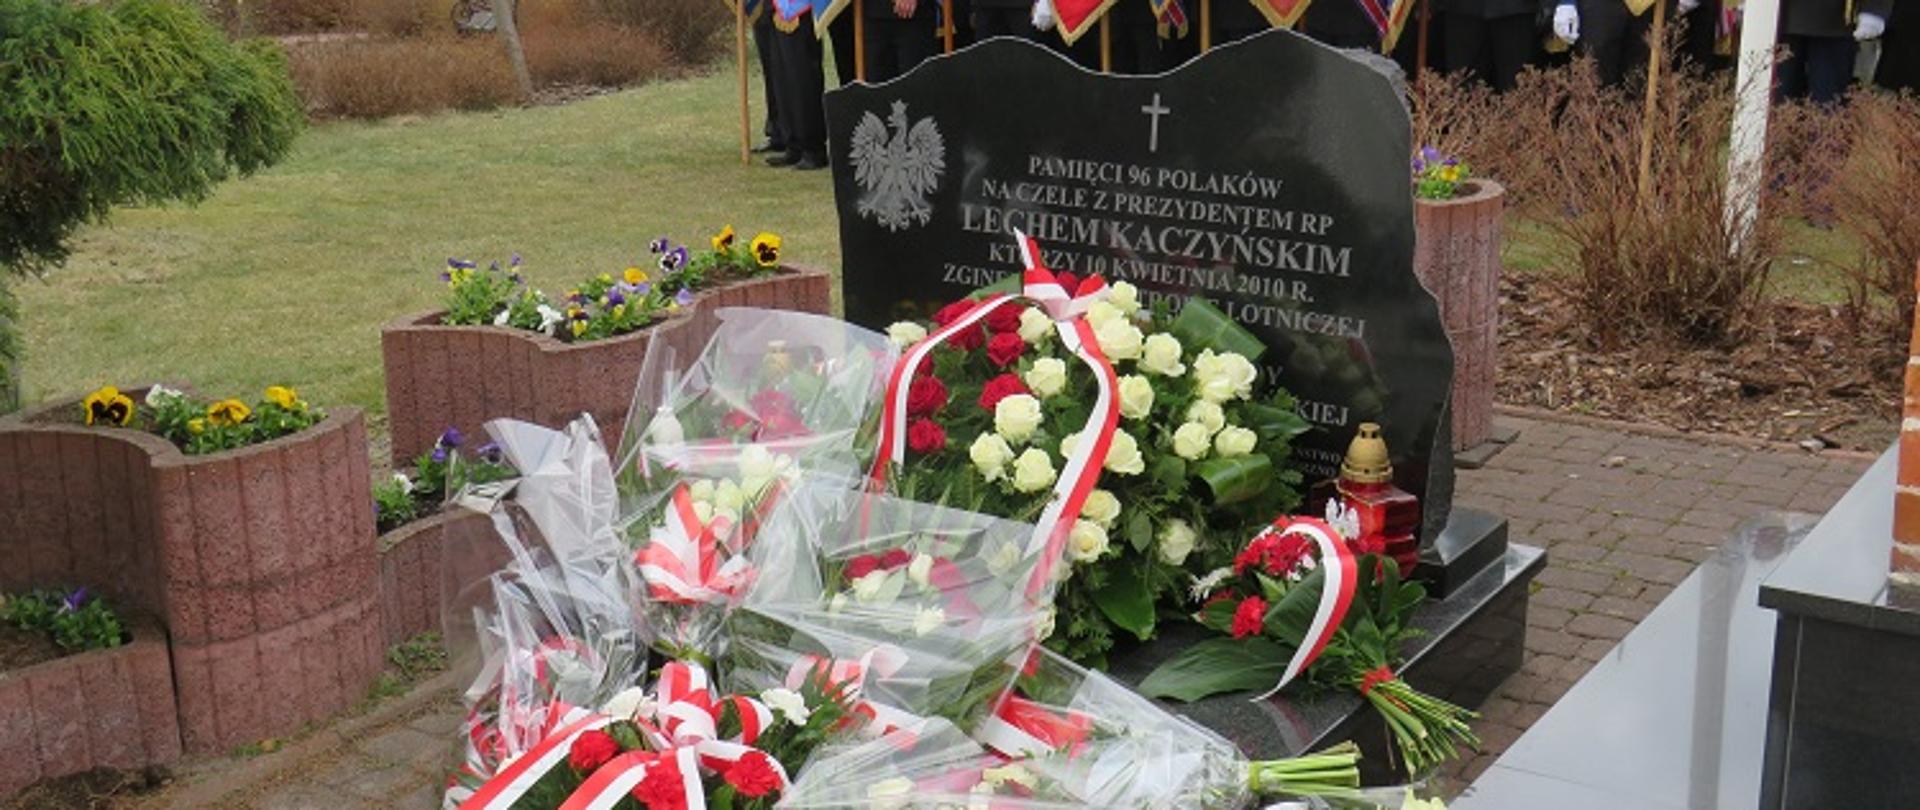 Złożone kwiaty pod pomnikiem poświęconym ofiarom katastrofy smoleńskiej